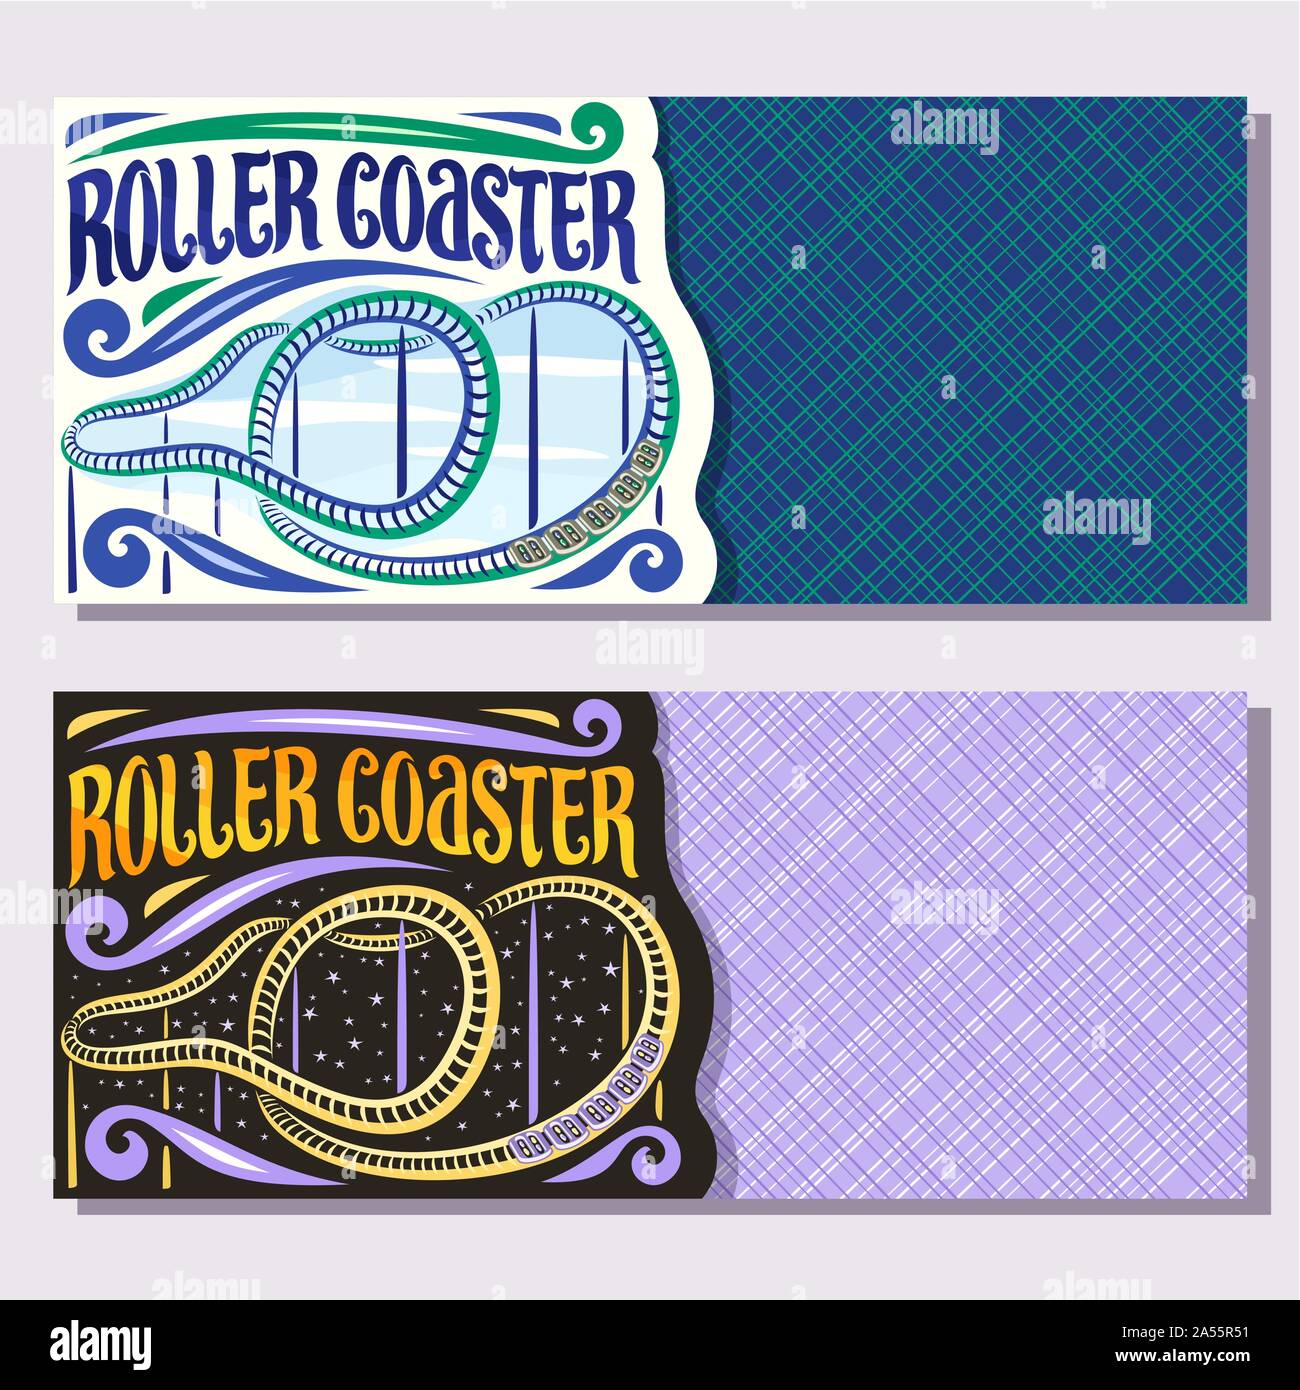 Banner di vettore per Roller Coaster con copia spazio, cartoon treno scendete in loop di una torsione rollercoaster nel parco di divertimenti, spazzola originale carattere tipografico per Illustrazione Vettoriale